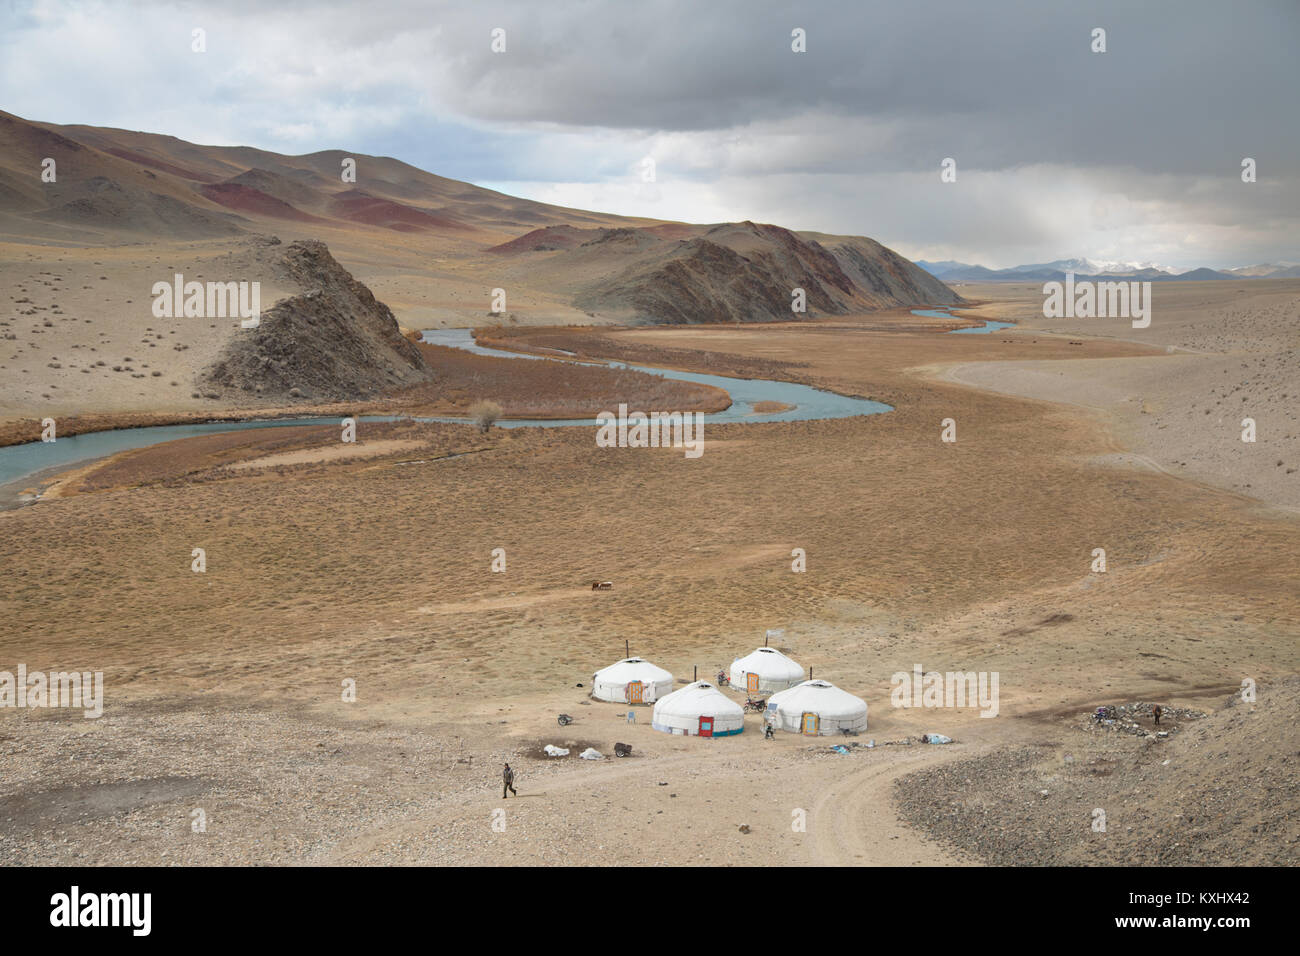 Paysage mongol kazakh de la rivière gers famille hiver nuageux Mongolie Banque D'Images